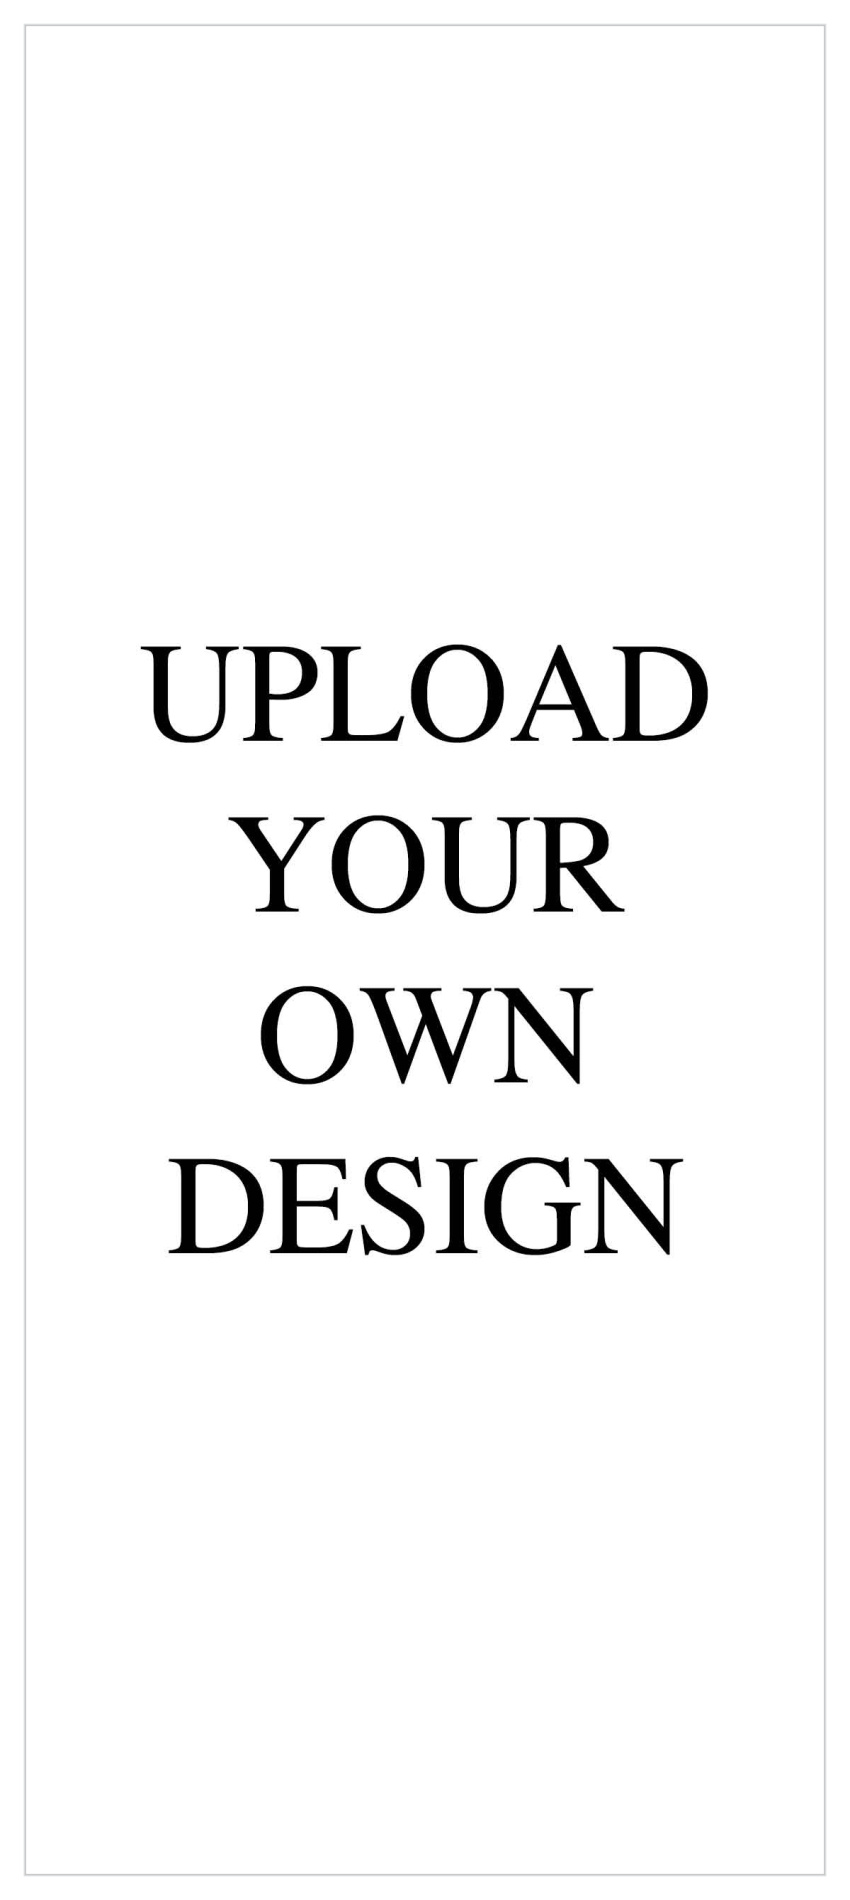 Upload Your Own Design 4"x9.25" Tea Portrait